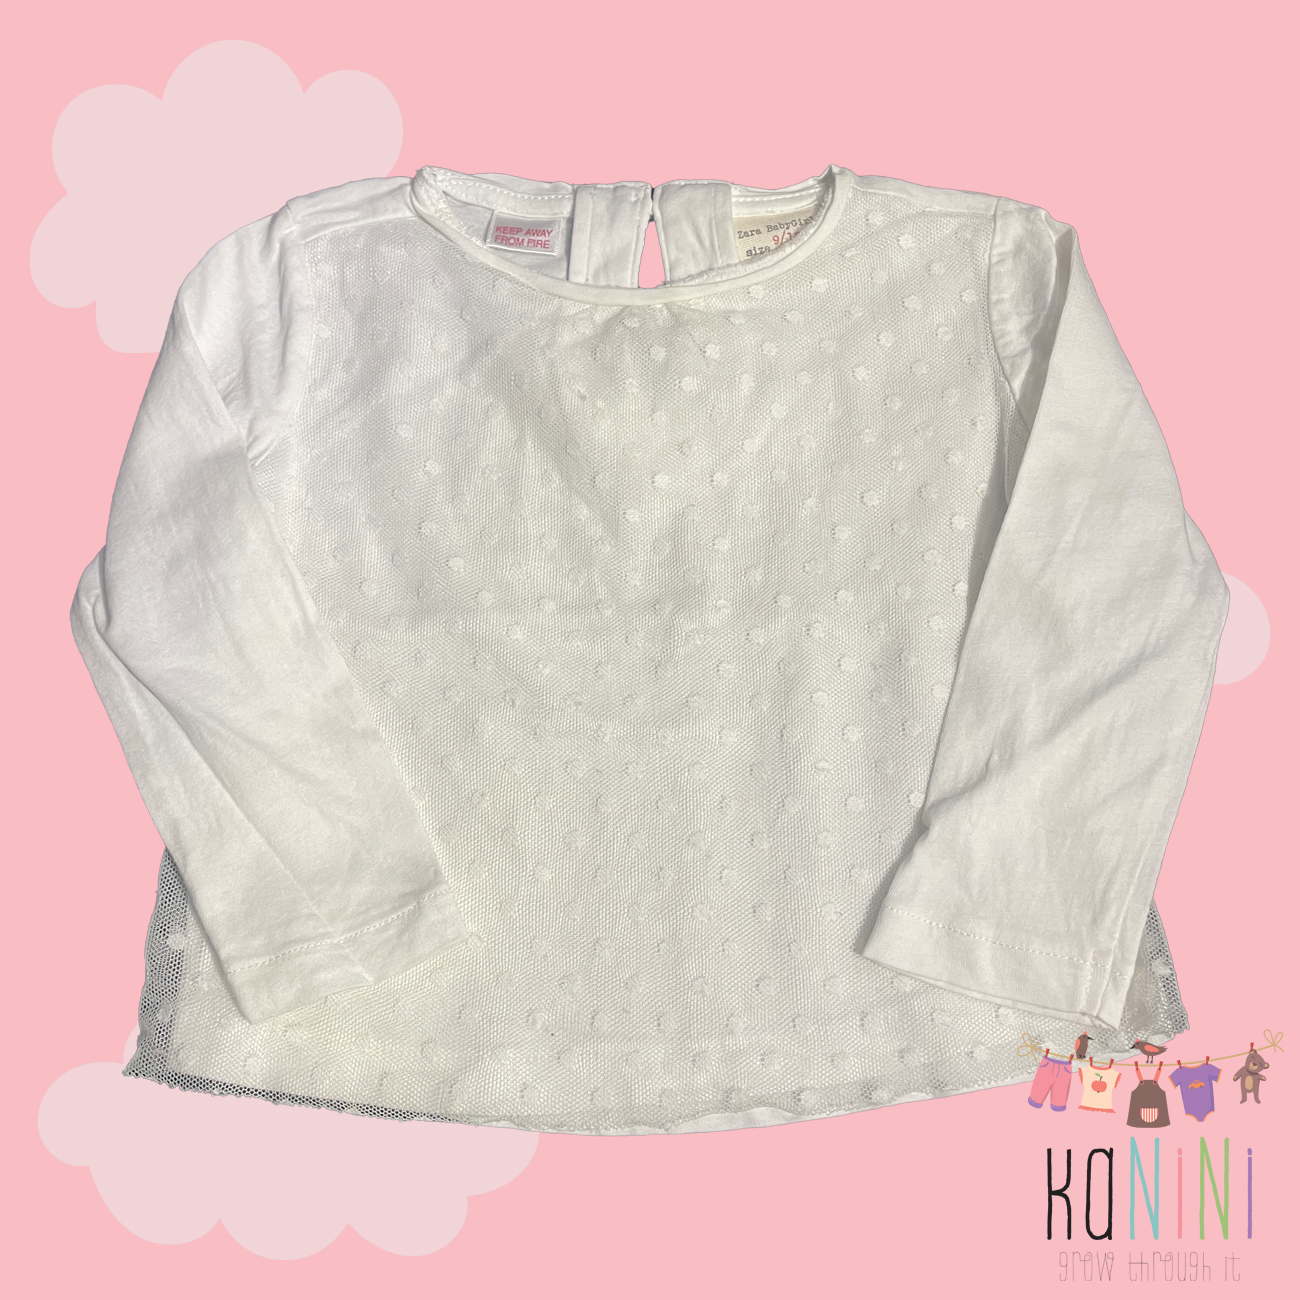 Featured image for “ZARA 9 - 12 Months Girls Long Sleeve Shirt”